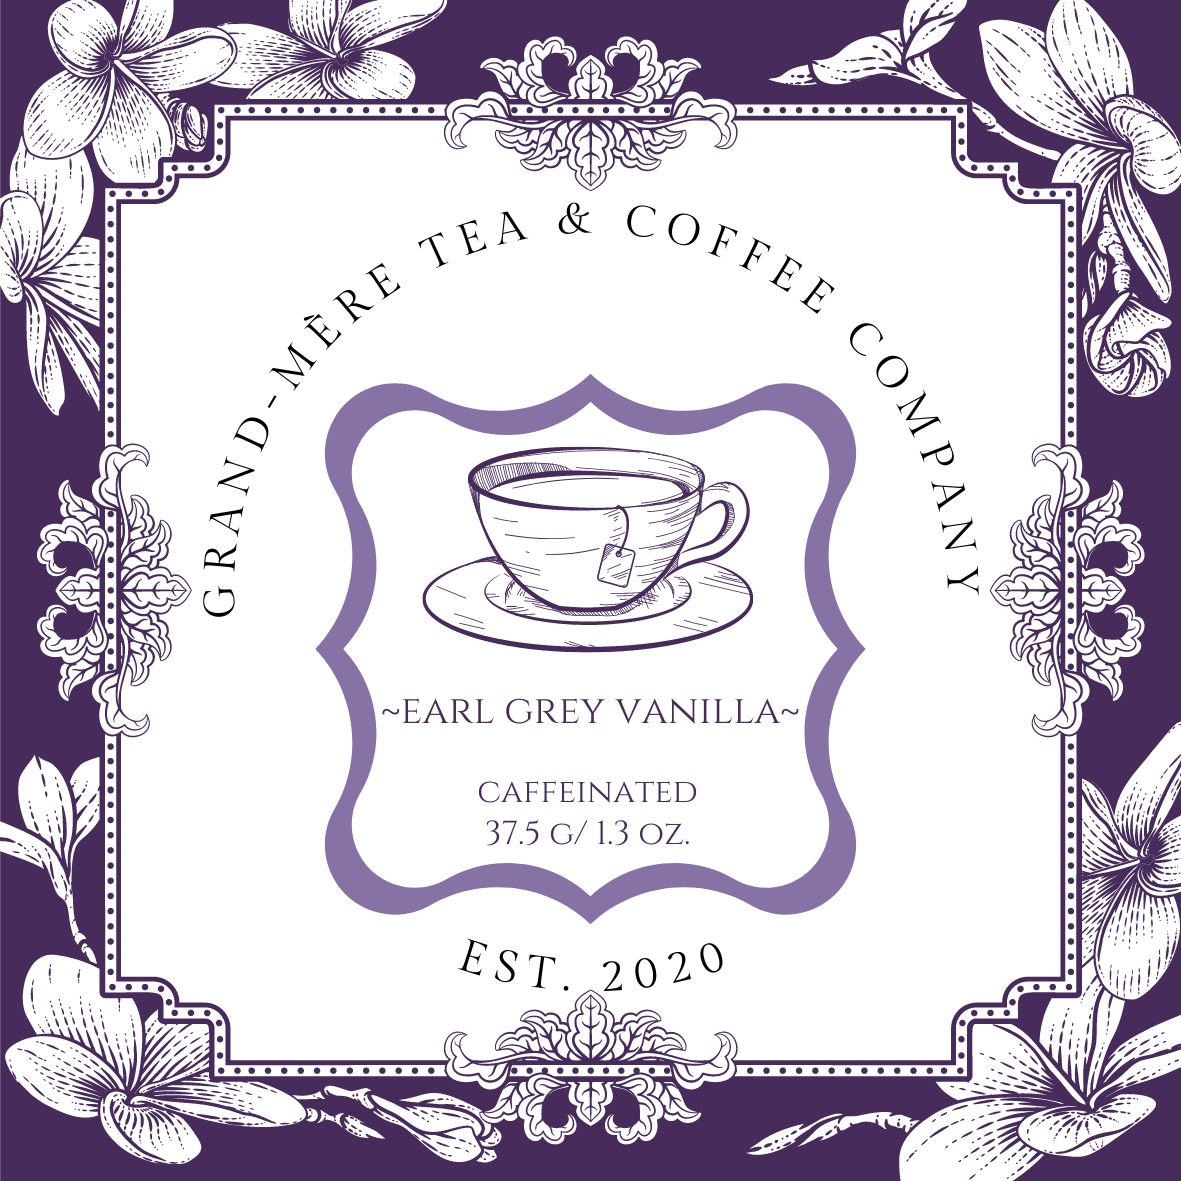 Earl Grey Vanilla Tea: Caffeinated